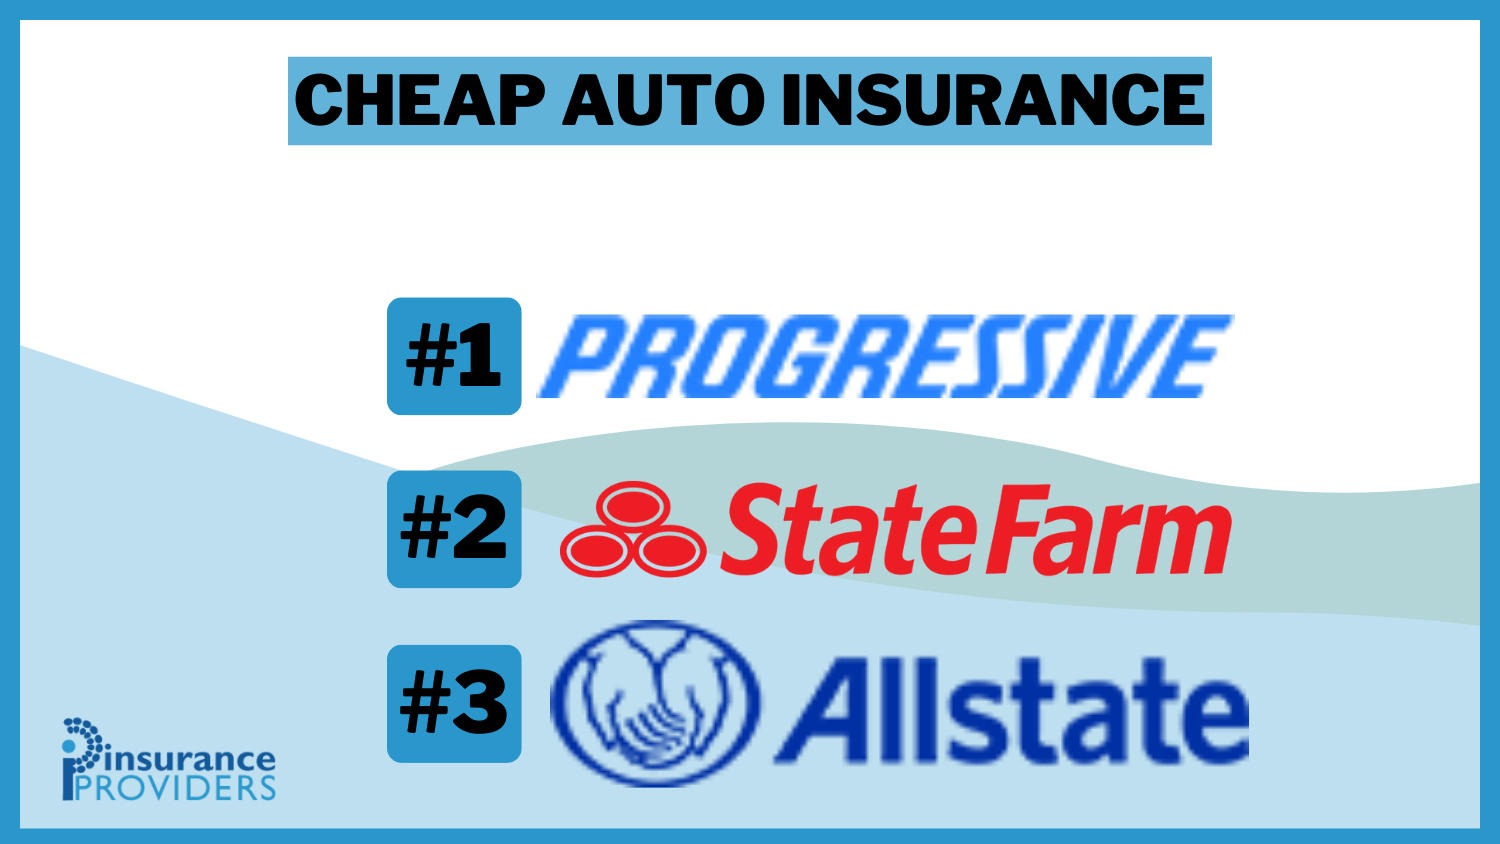 Cheap Auto Insurance: Progressive, State Farm, and Allstate